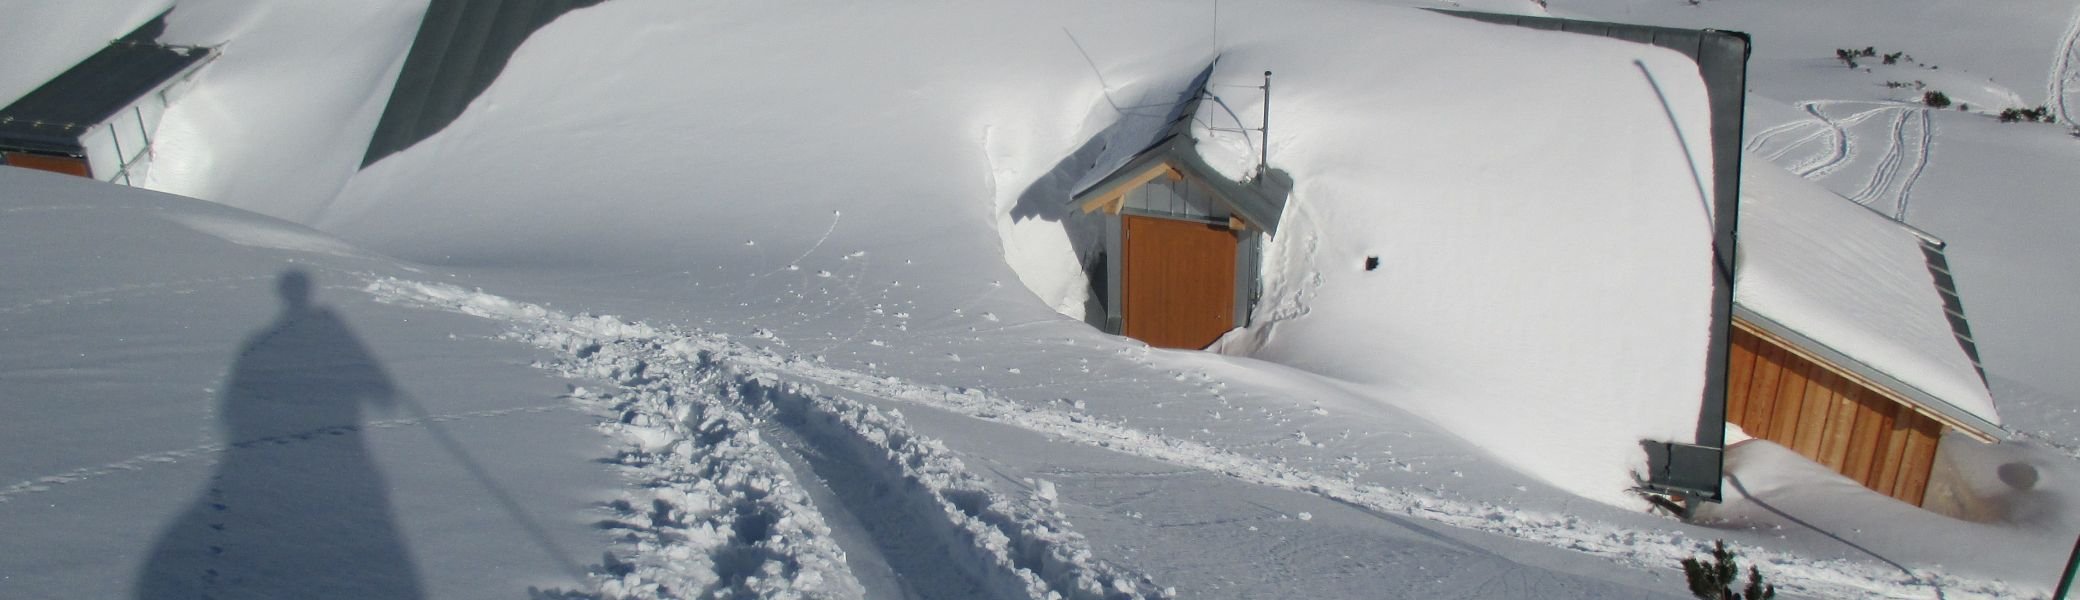 Coburger Hütte im Winter | © Paul Hoffmann 2015